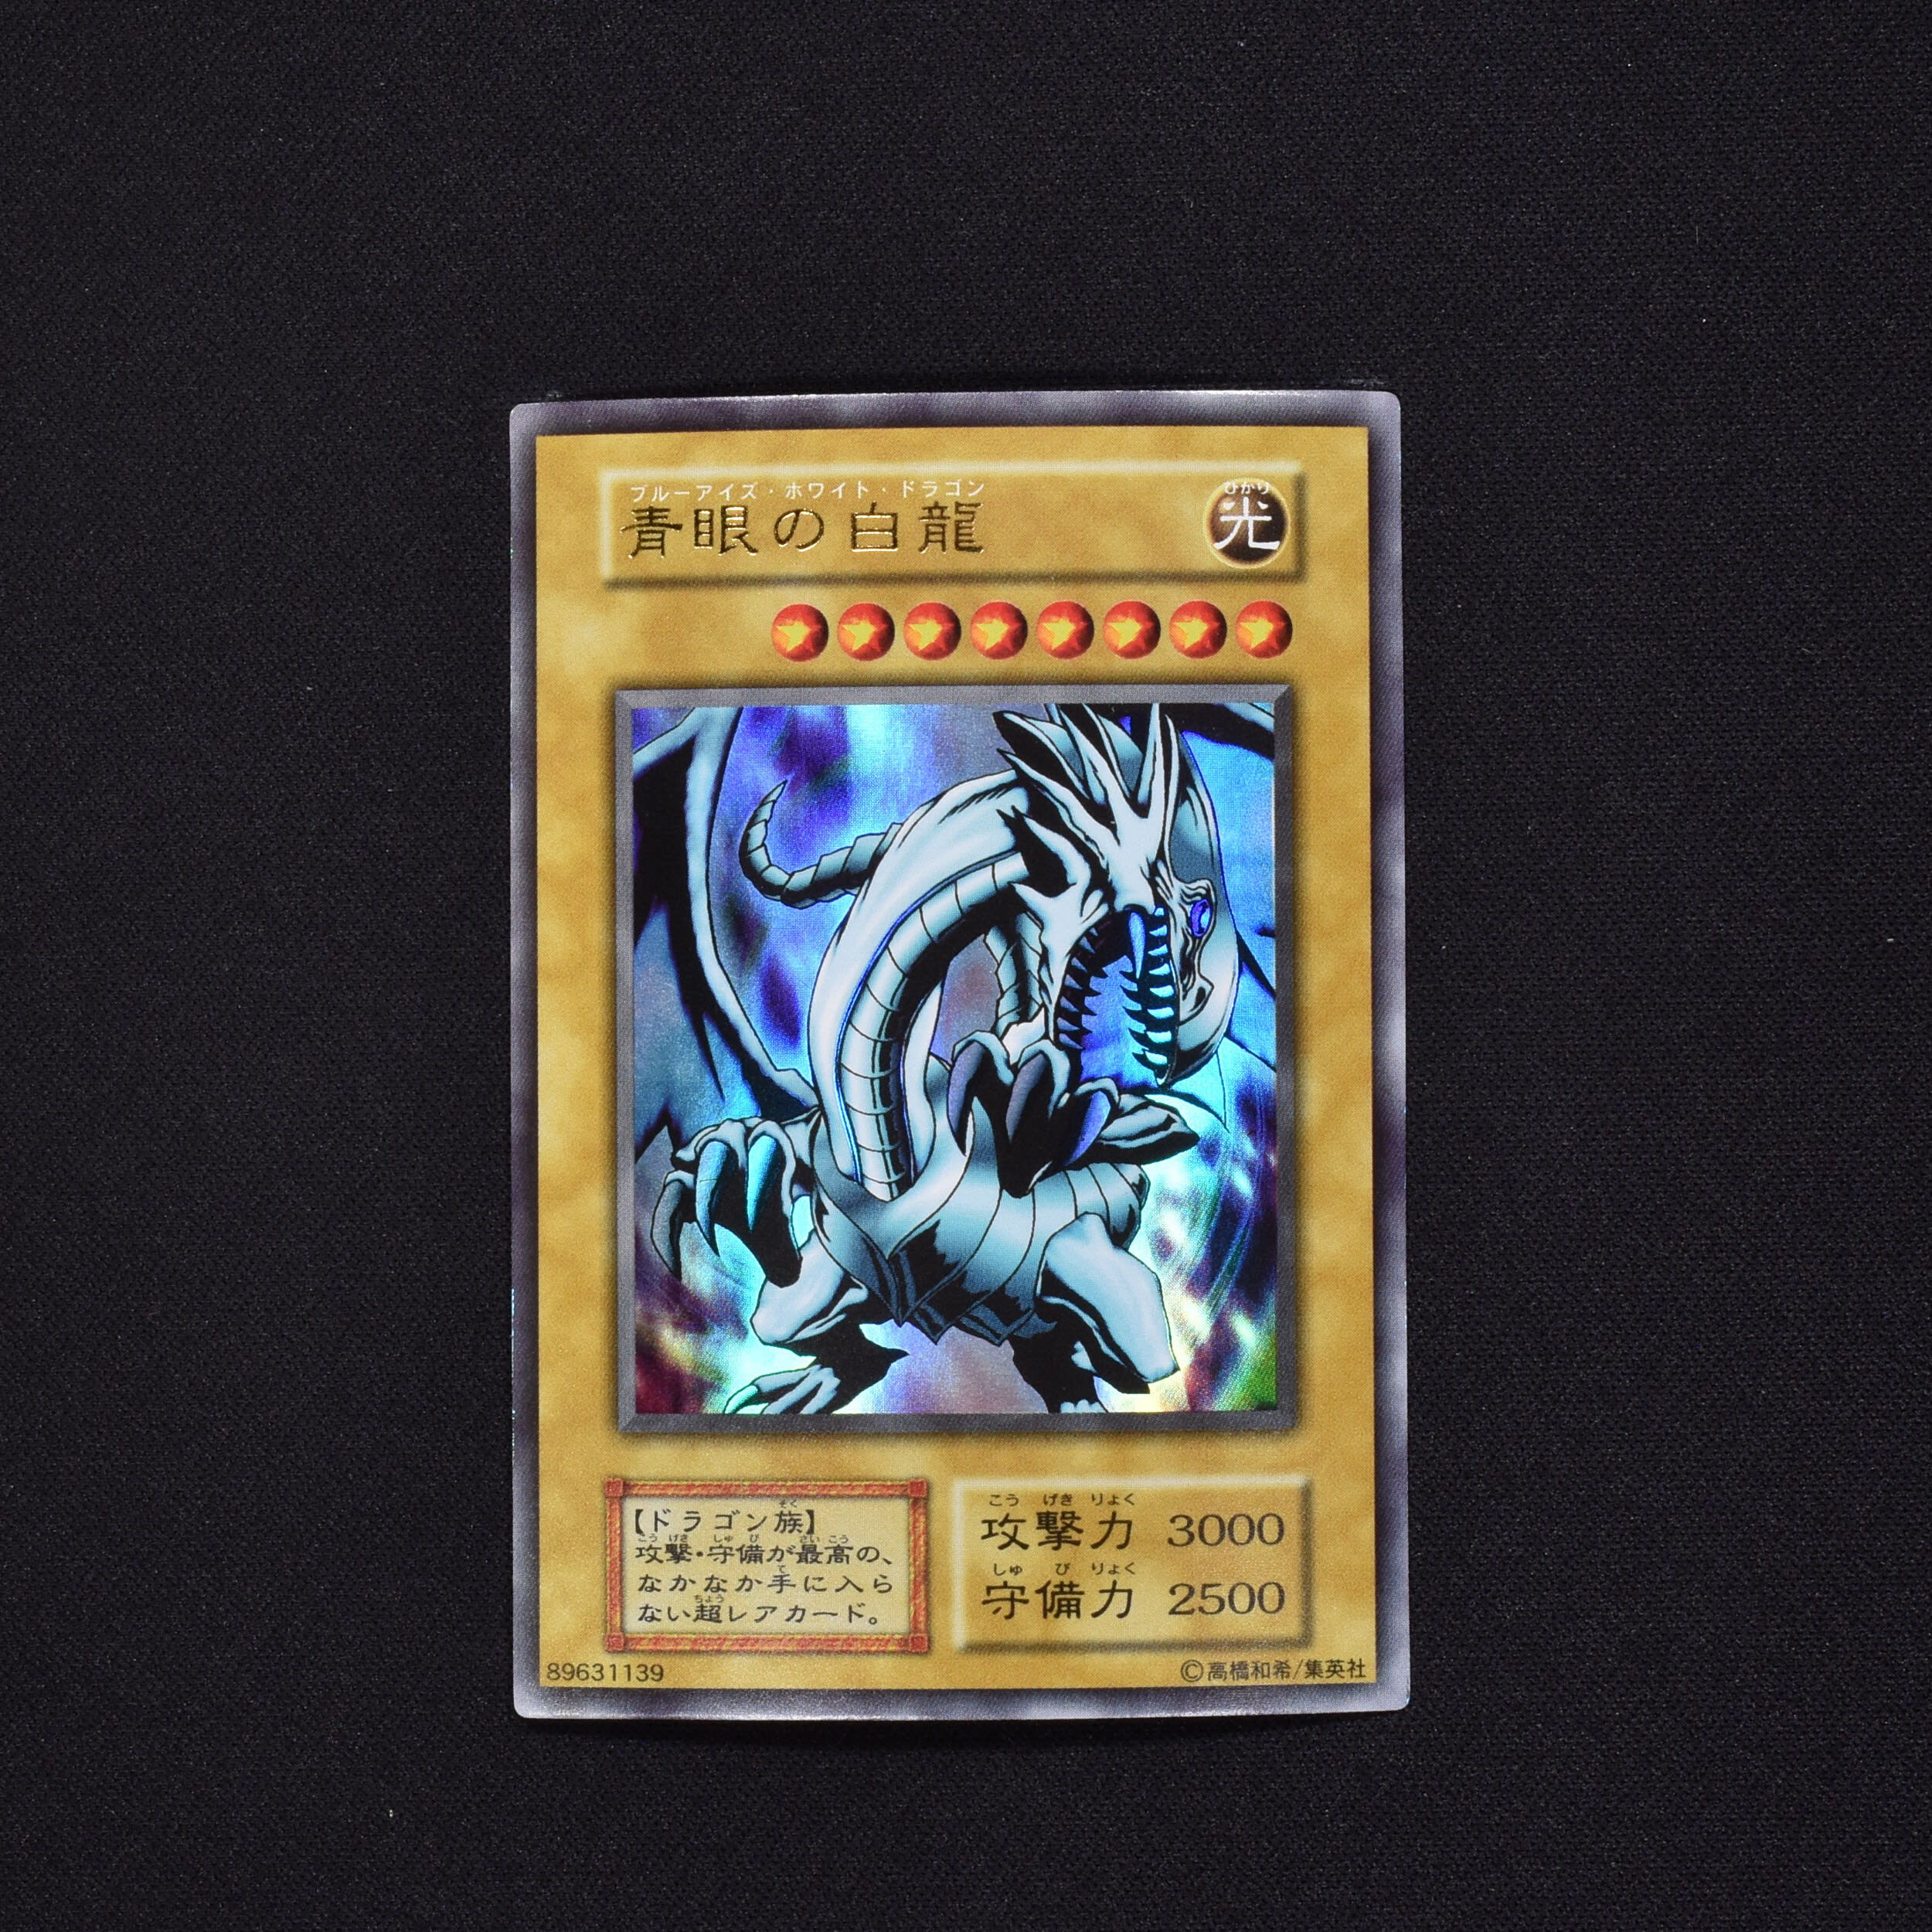 遊戯王カード ＶＷＸＹＺ－ドラゴン・カタパルトキャノン 旧アジア版 レリーフ